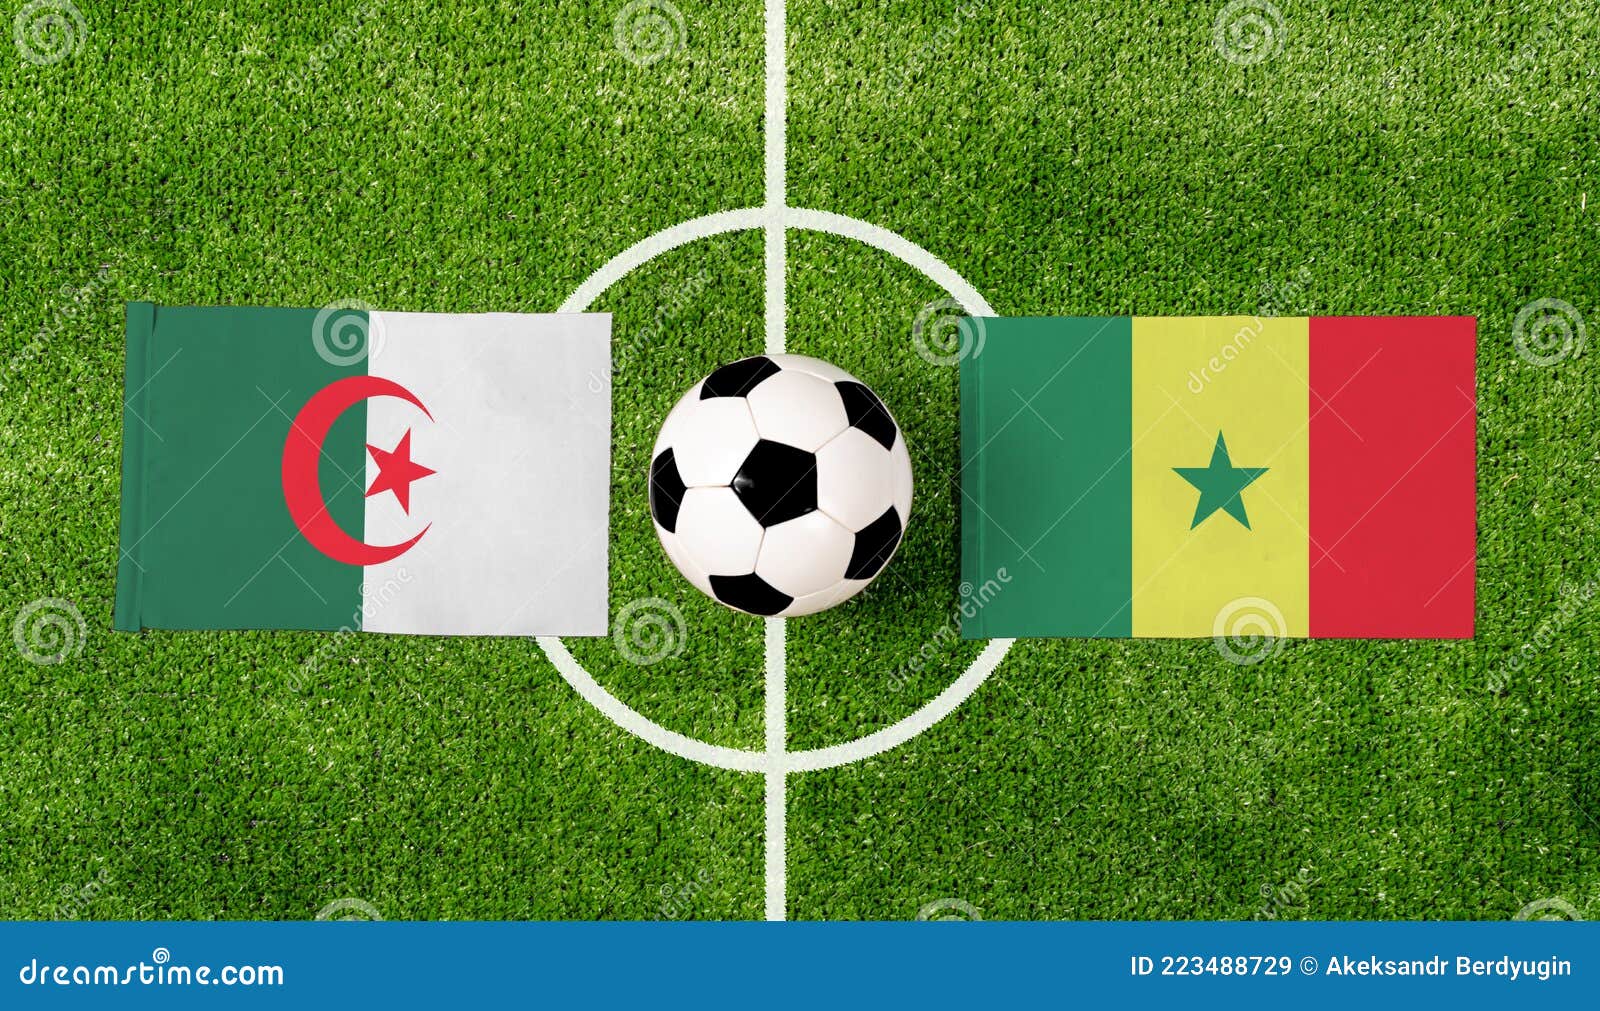 Ballon de football - Prix en Algérie